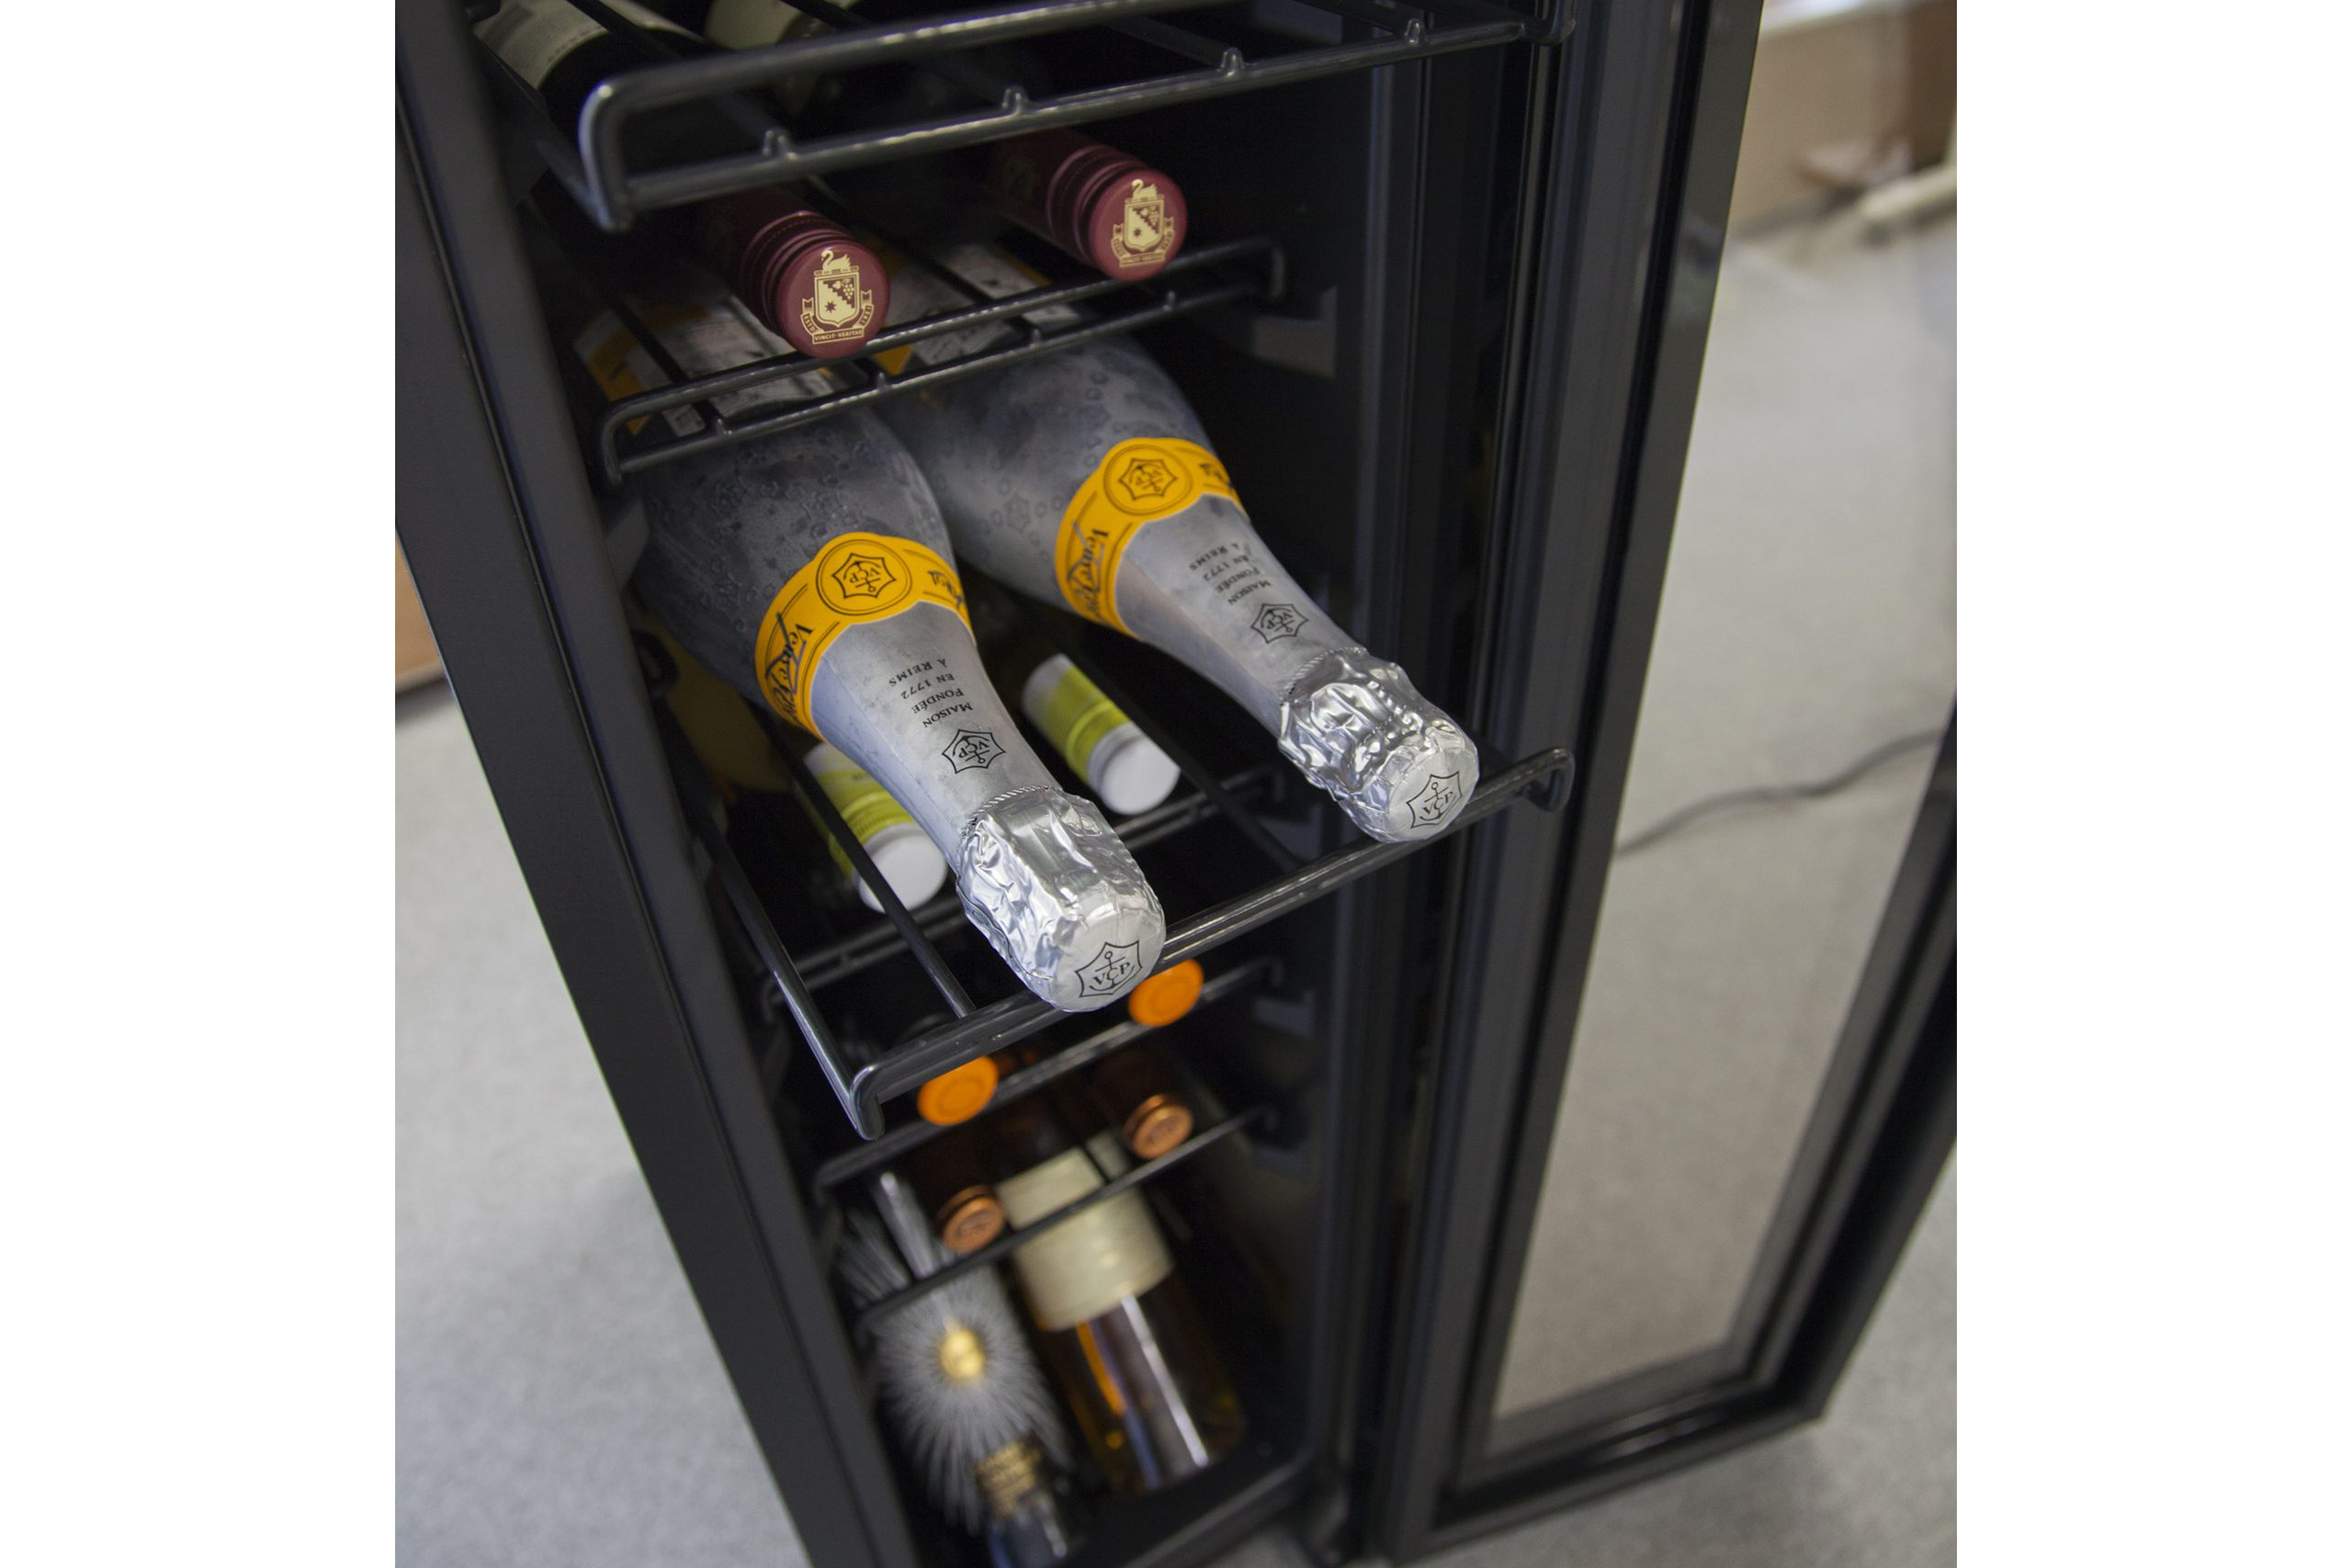 ルフィエール ワインセラー LW-S12 2019年製造 - 冷蔵庫